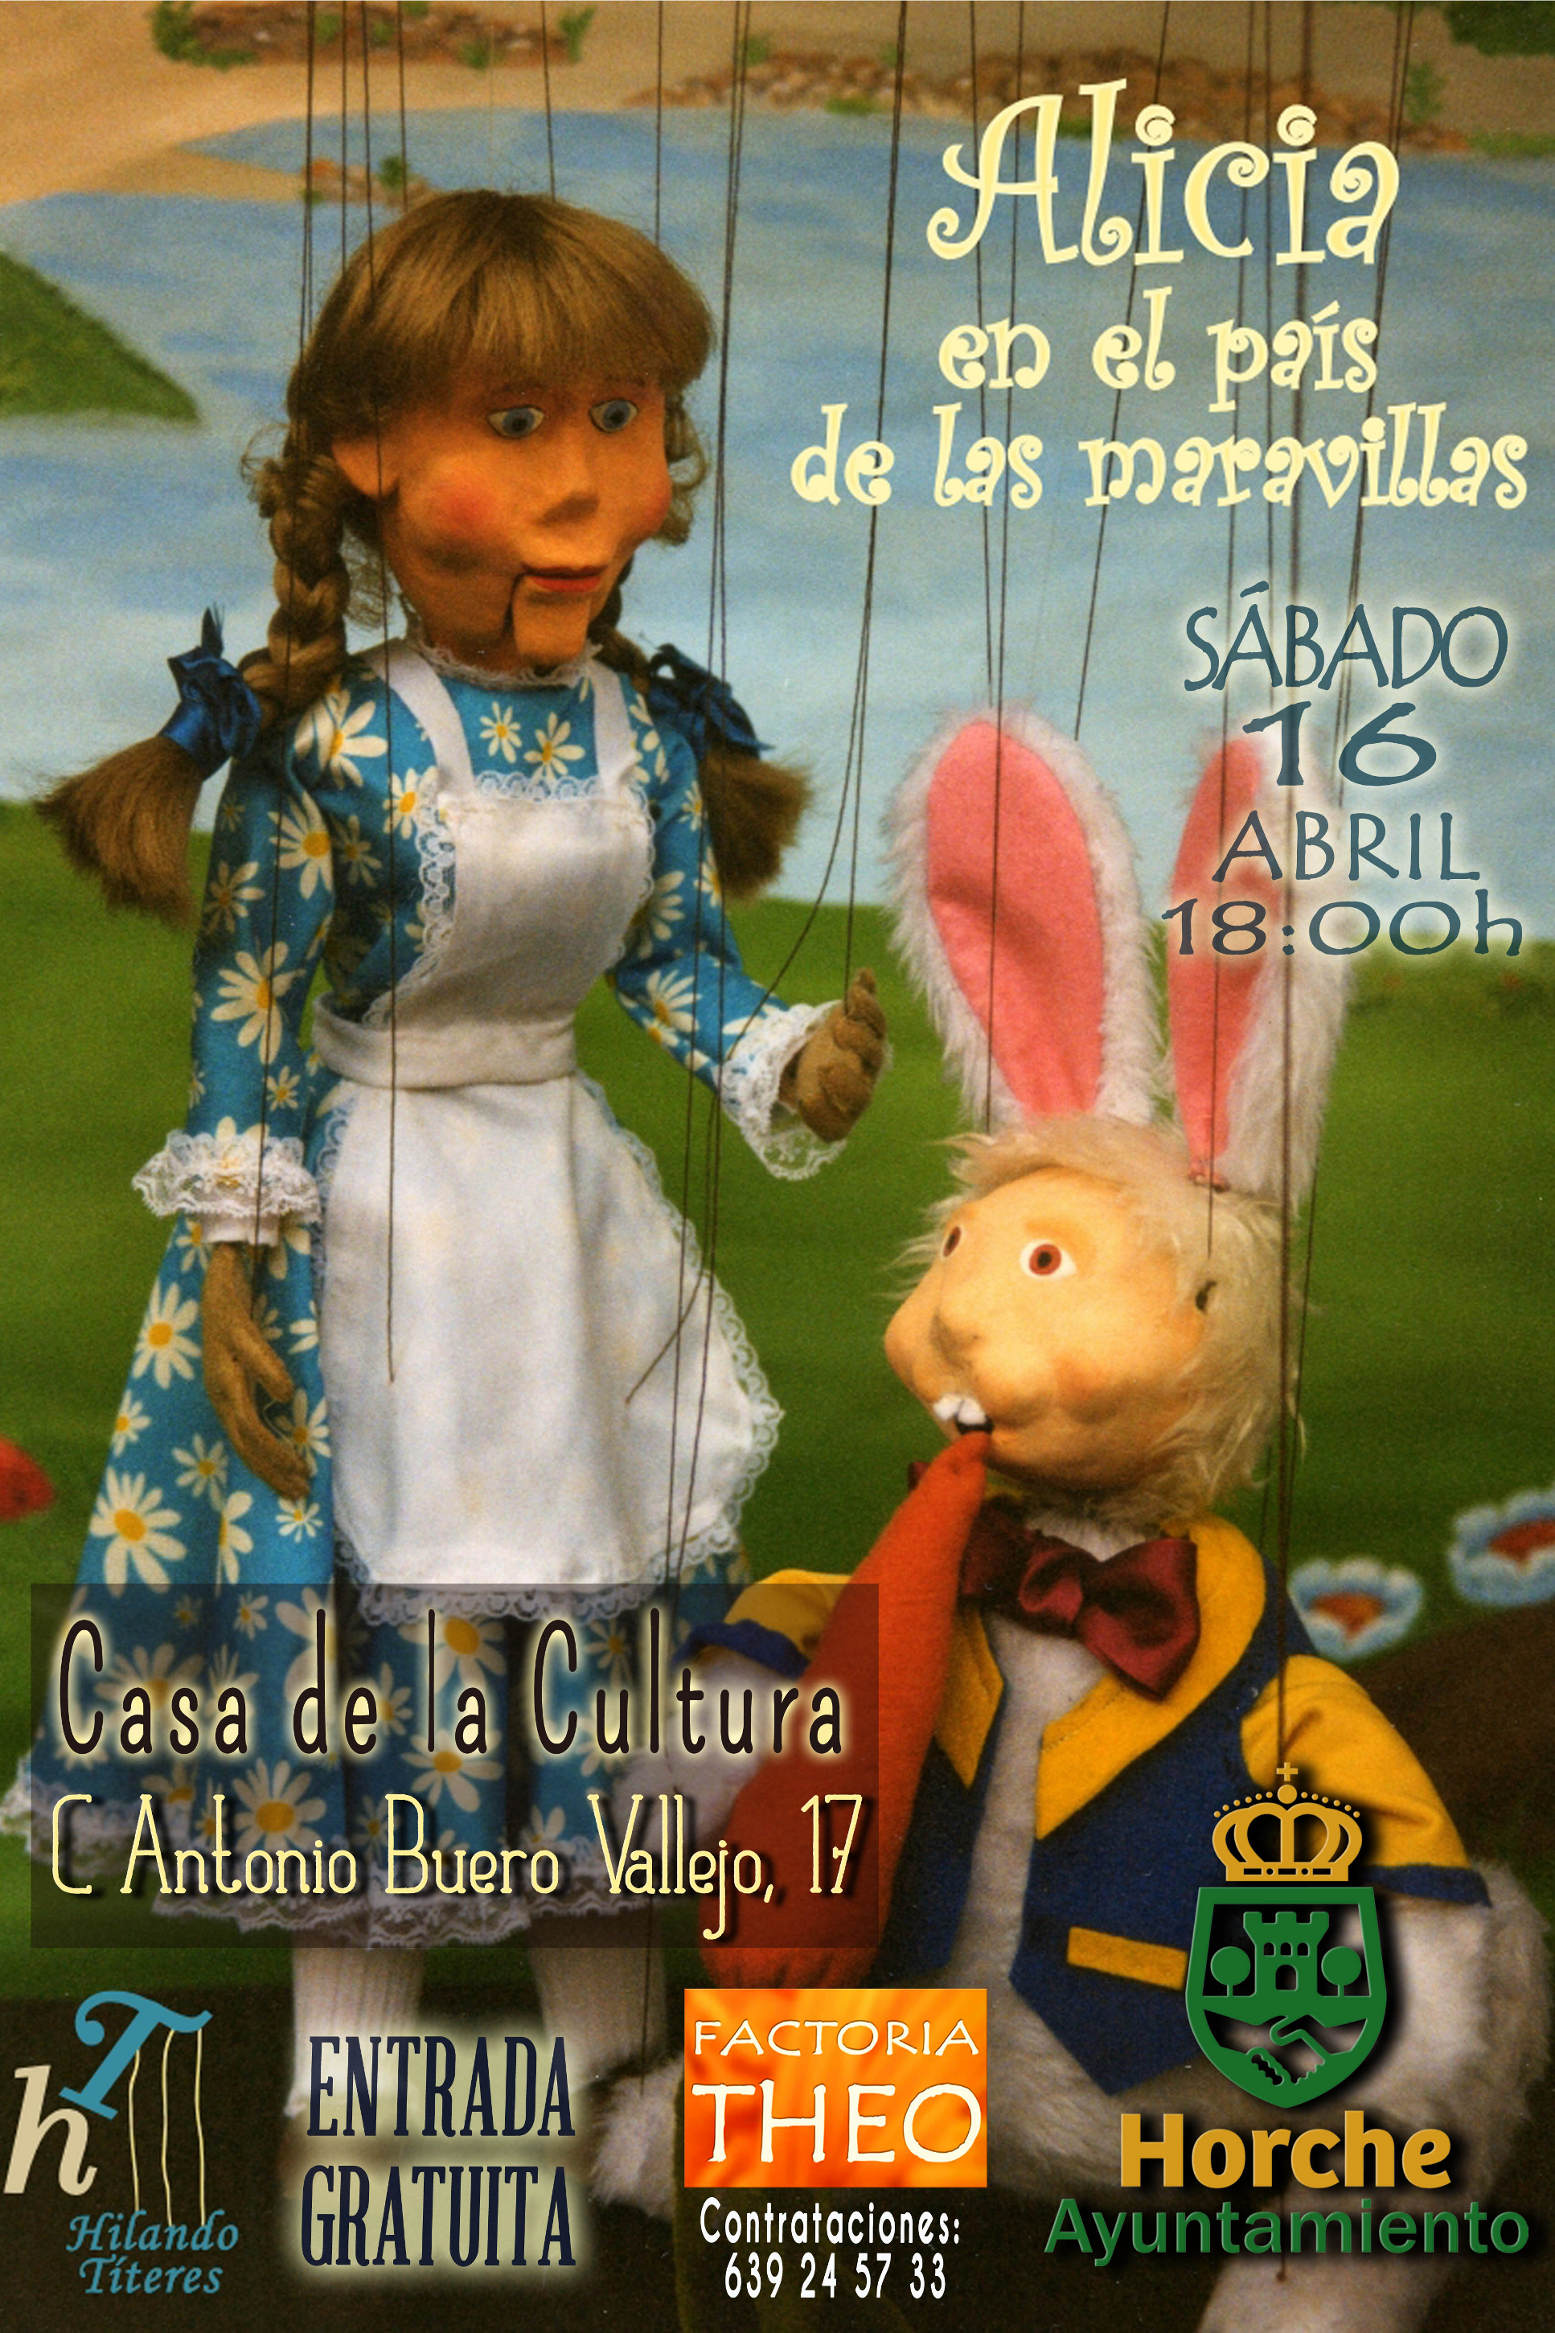 Cartel del espectáculo de marionetas Alicia en Horche Guadalajara